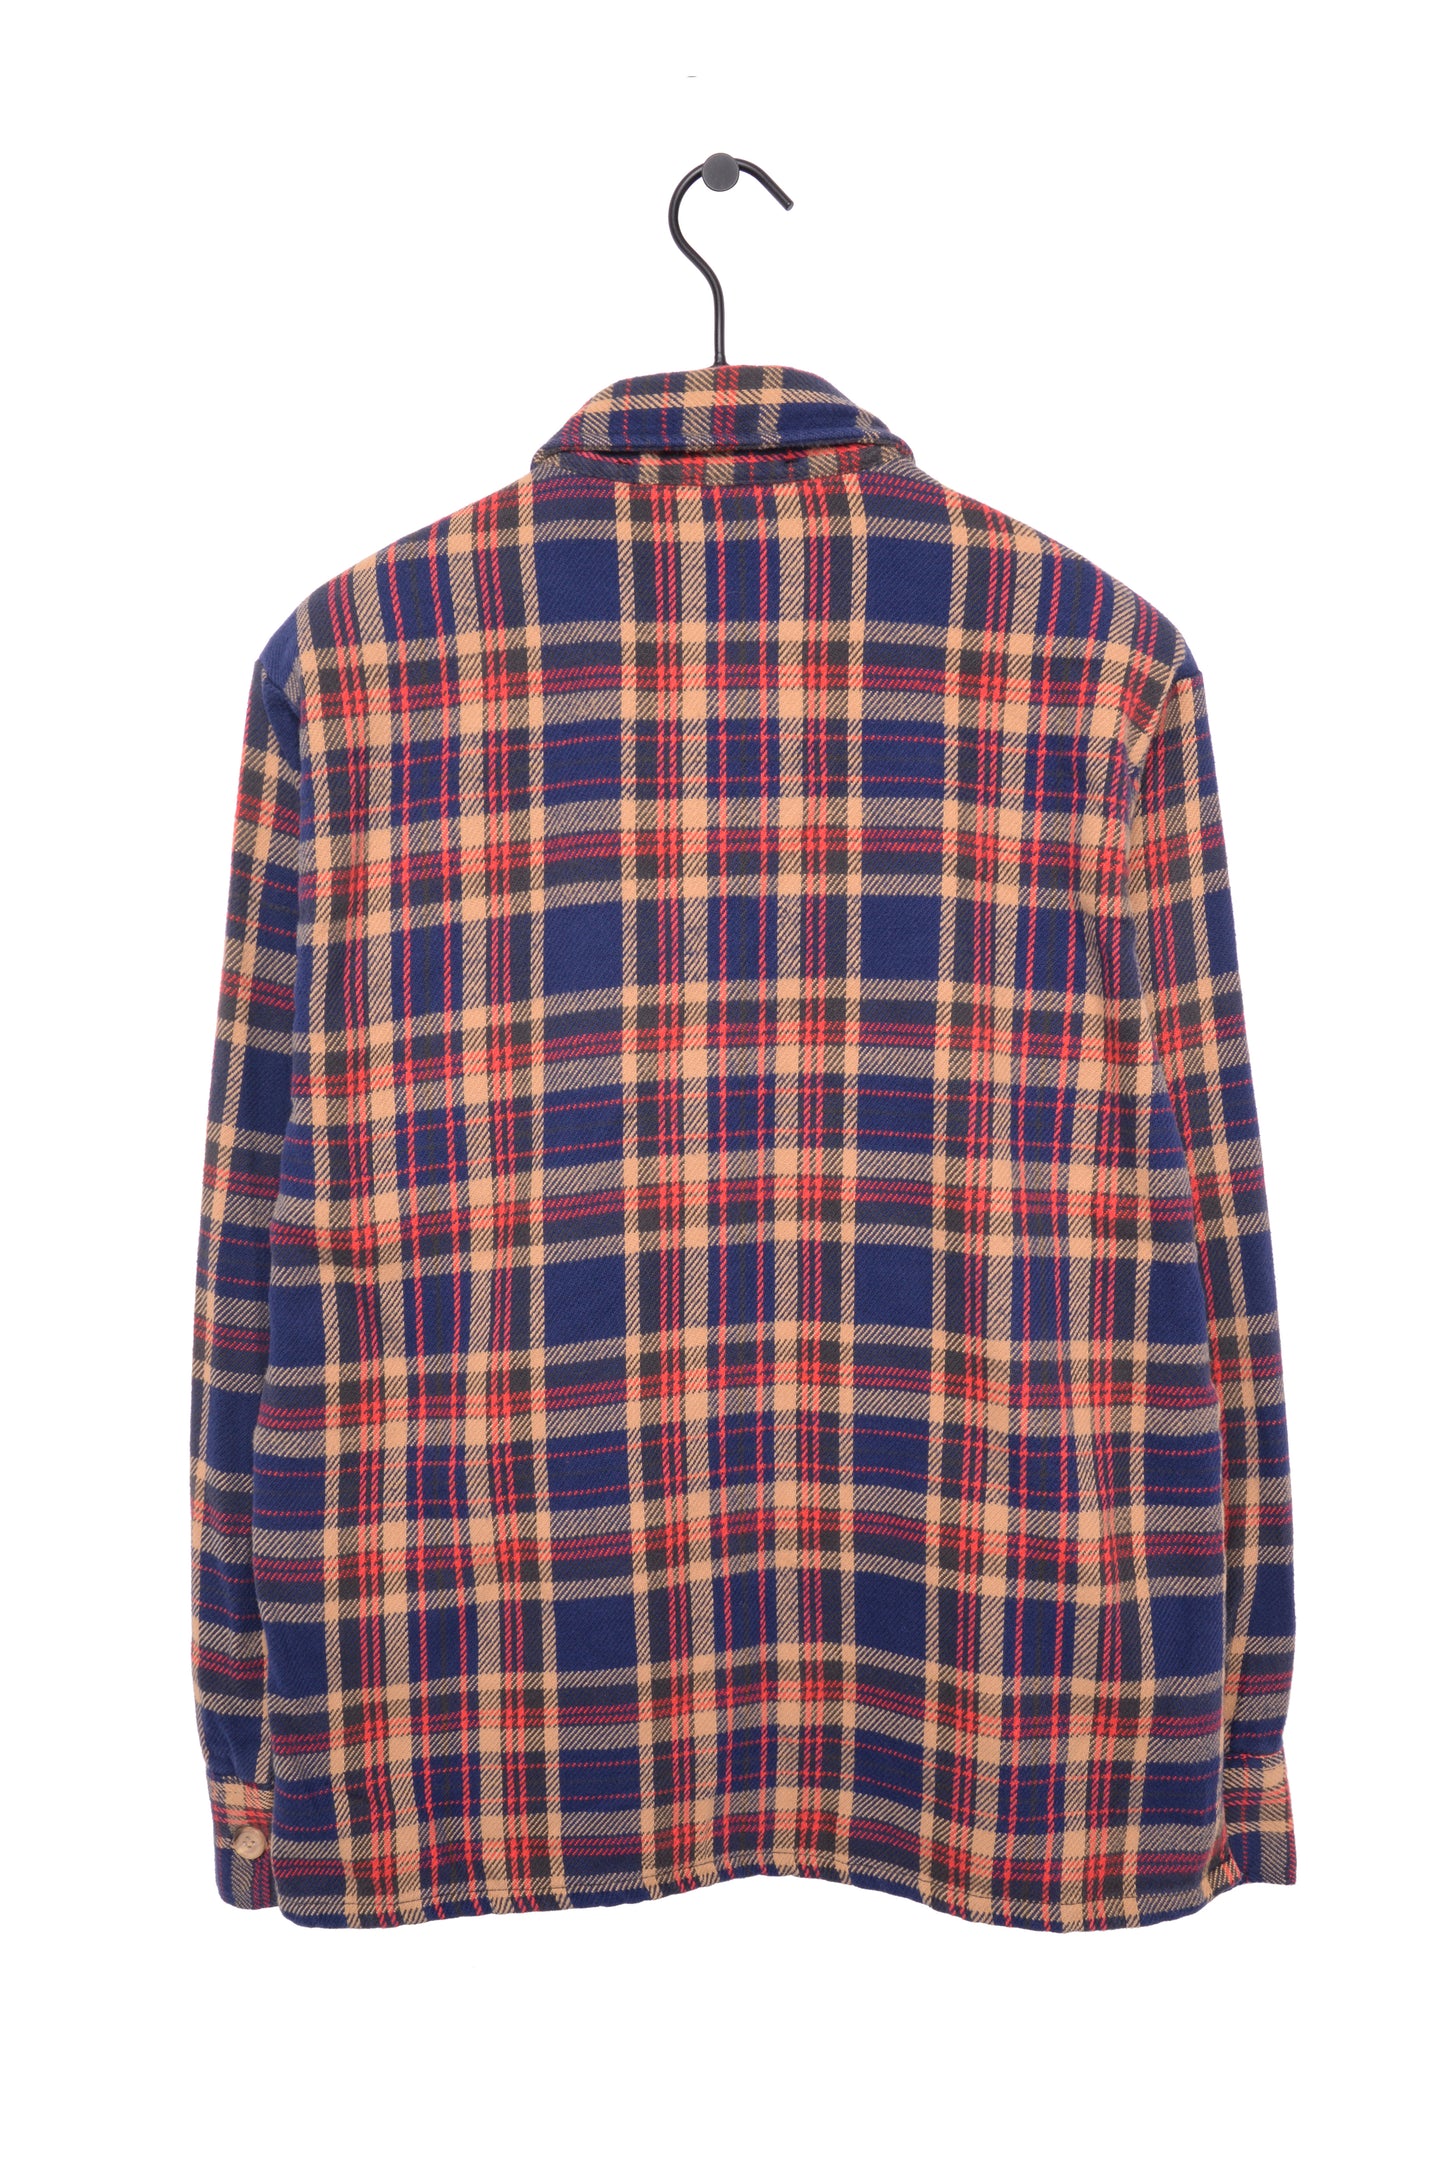 1980s Levi's Flannel Shirt